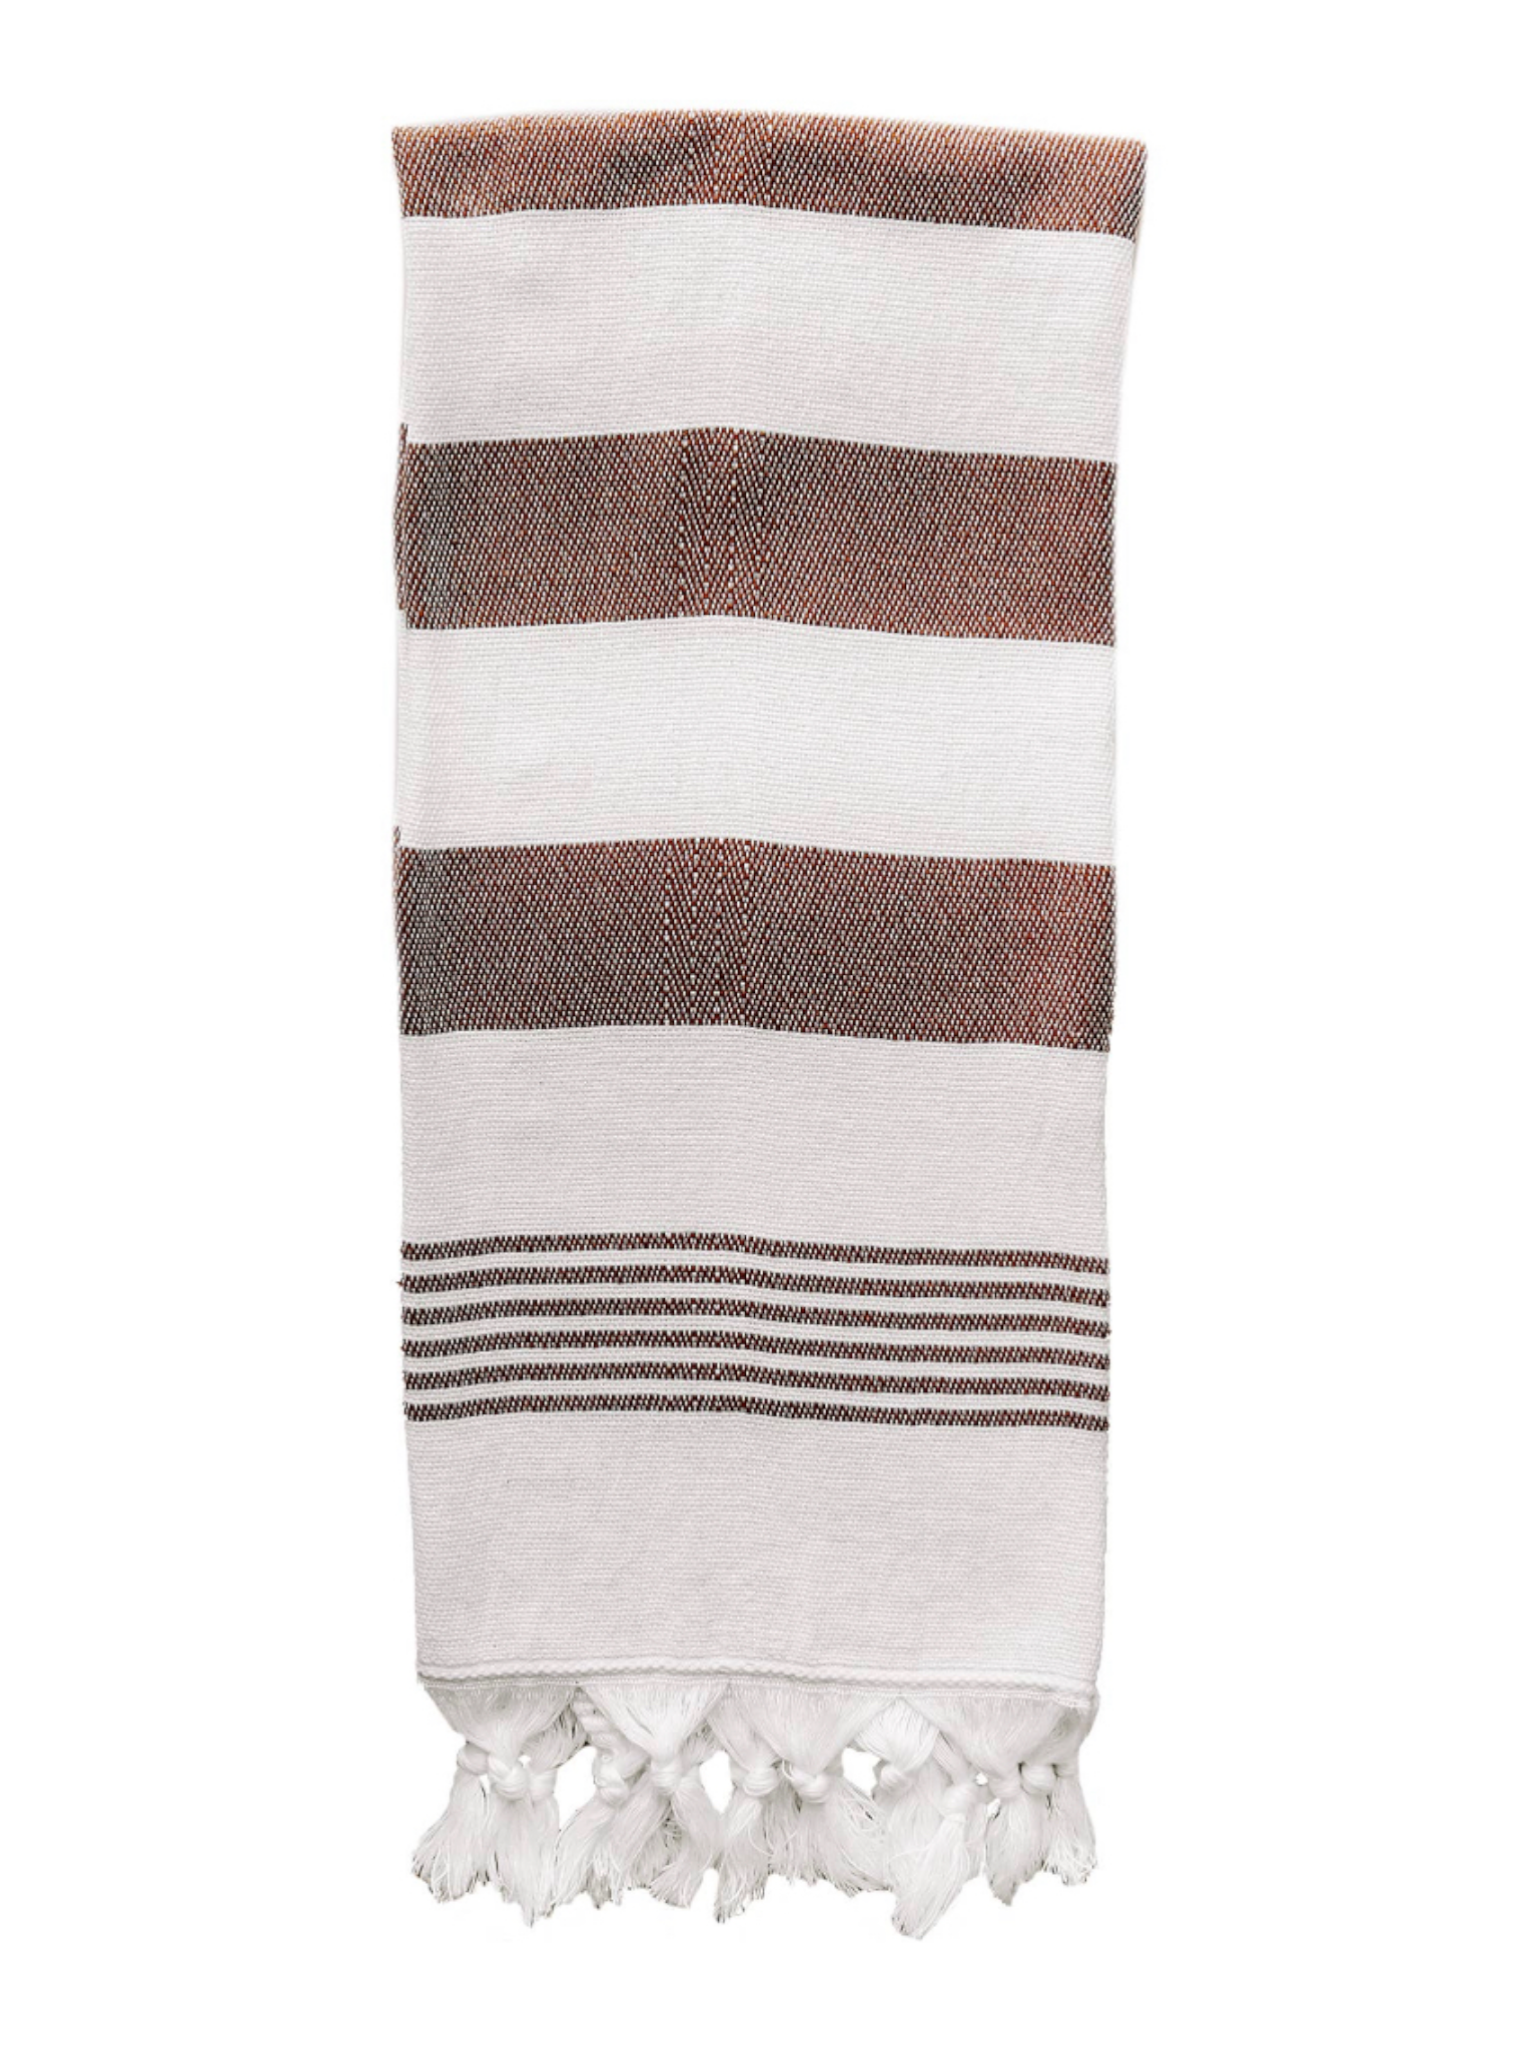 Turkish Hand Towel - Neutral Stripe